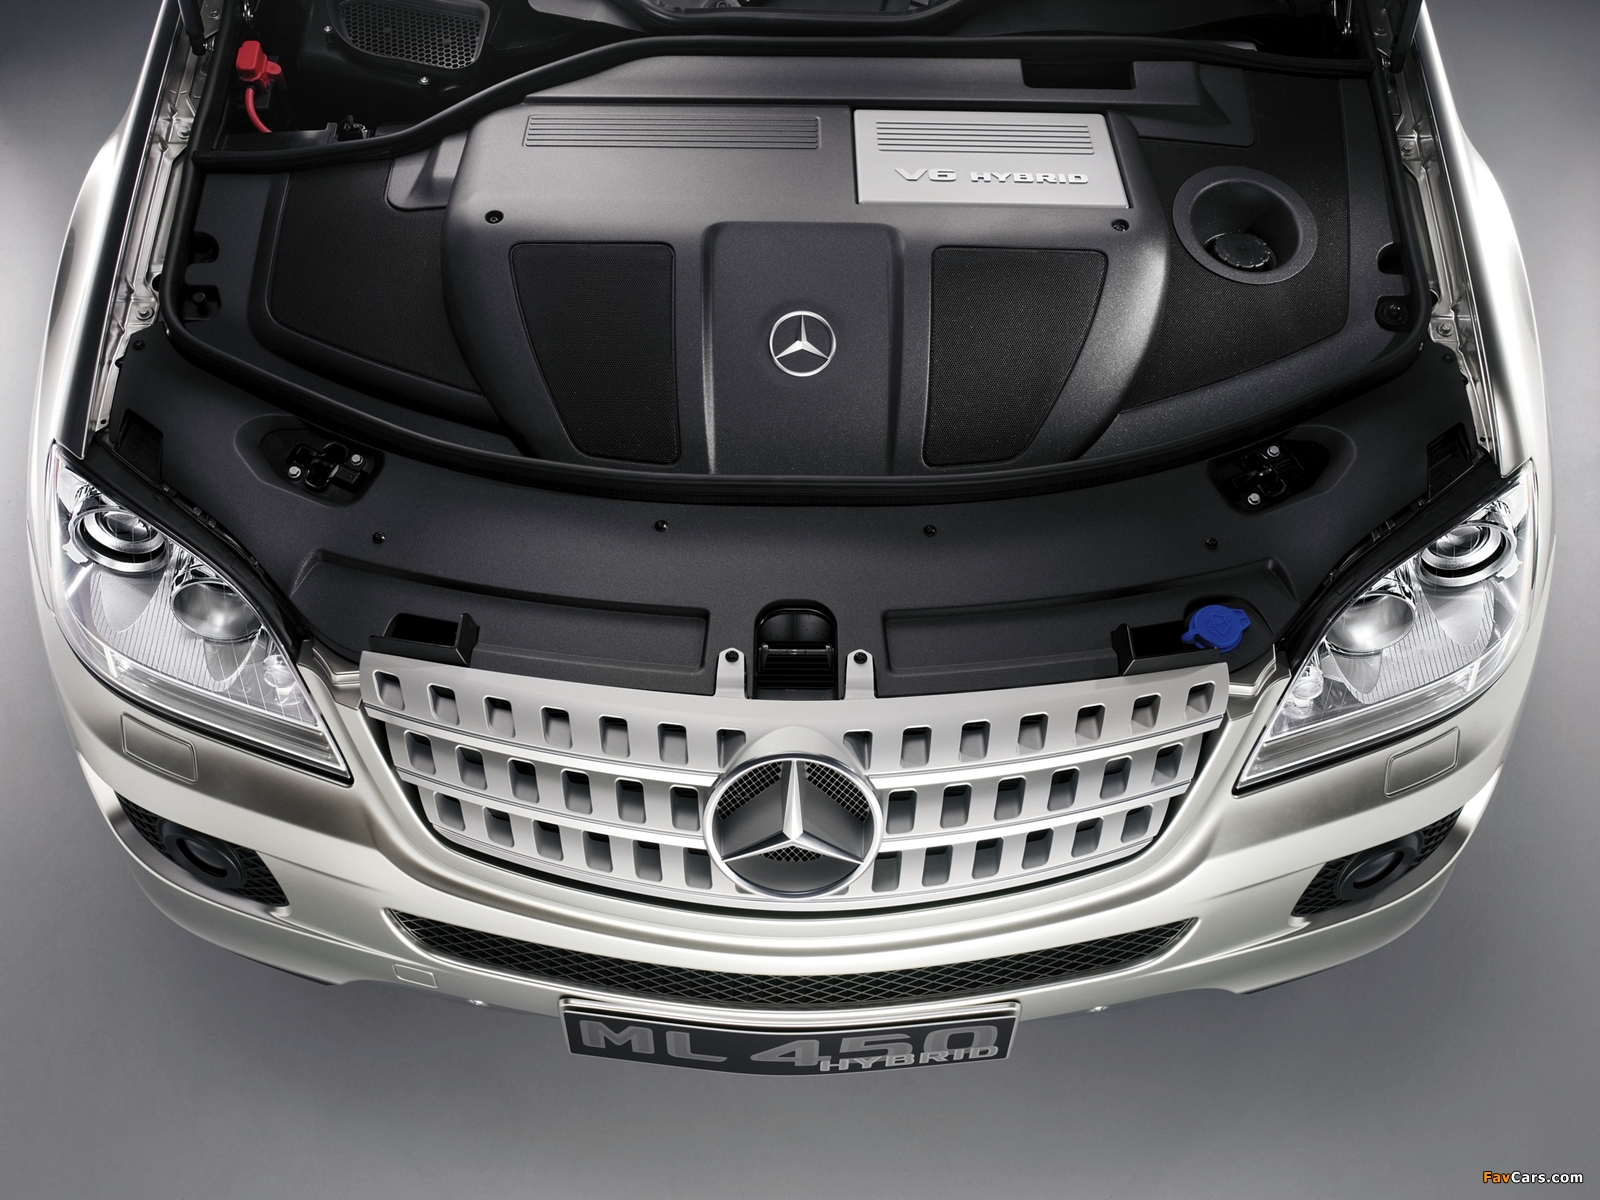 Mercedes-Benz ML 450 Hybrid Concept (W164) 2007 photos (1600 x 1200)